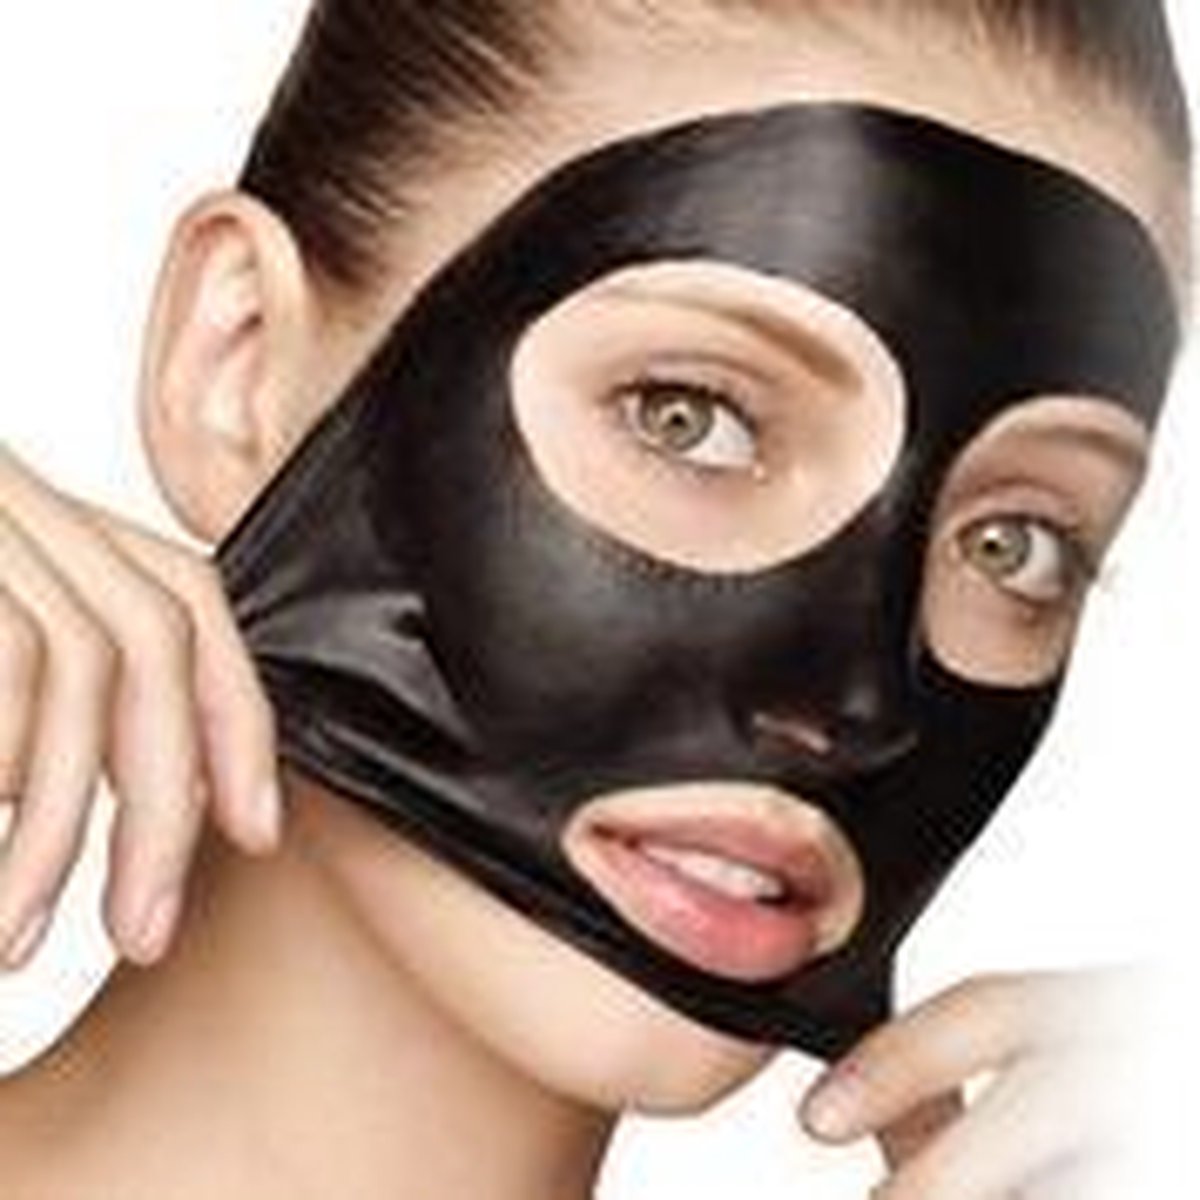 Черная маска видео. Маска Peel off. Маска для лица Black Mask. Маска для лица Peel-off пленка. Charcoal черная маска.